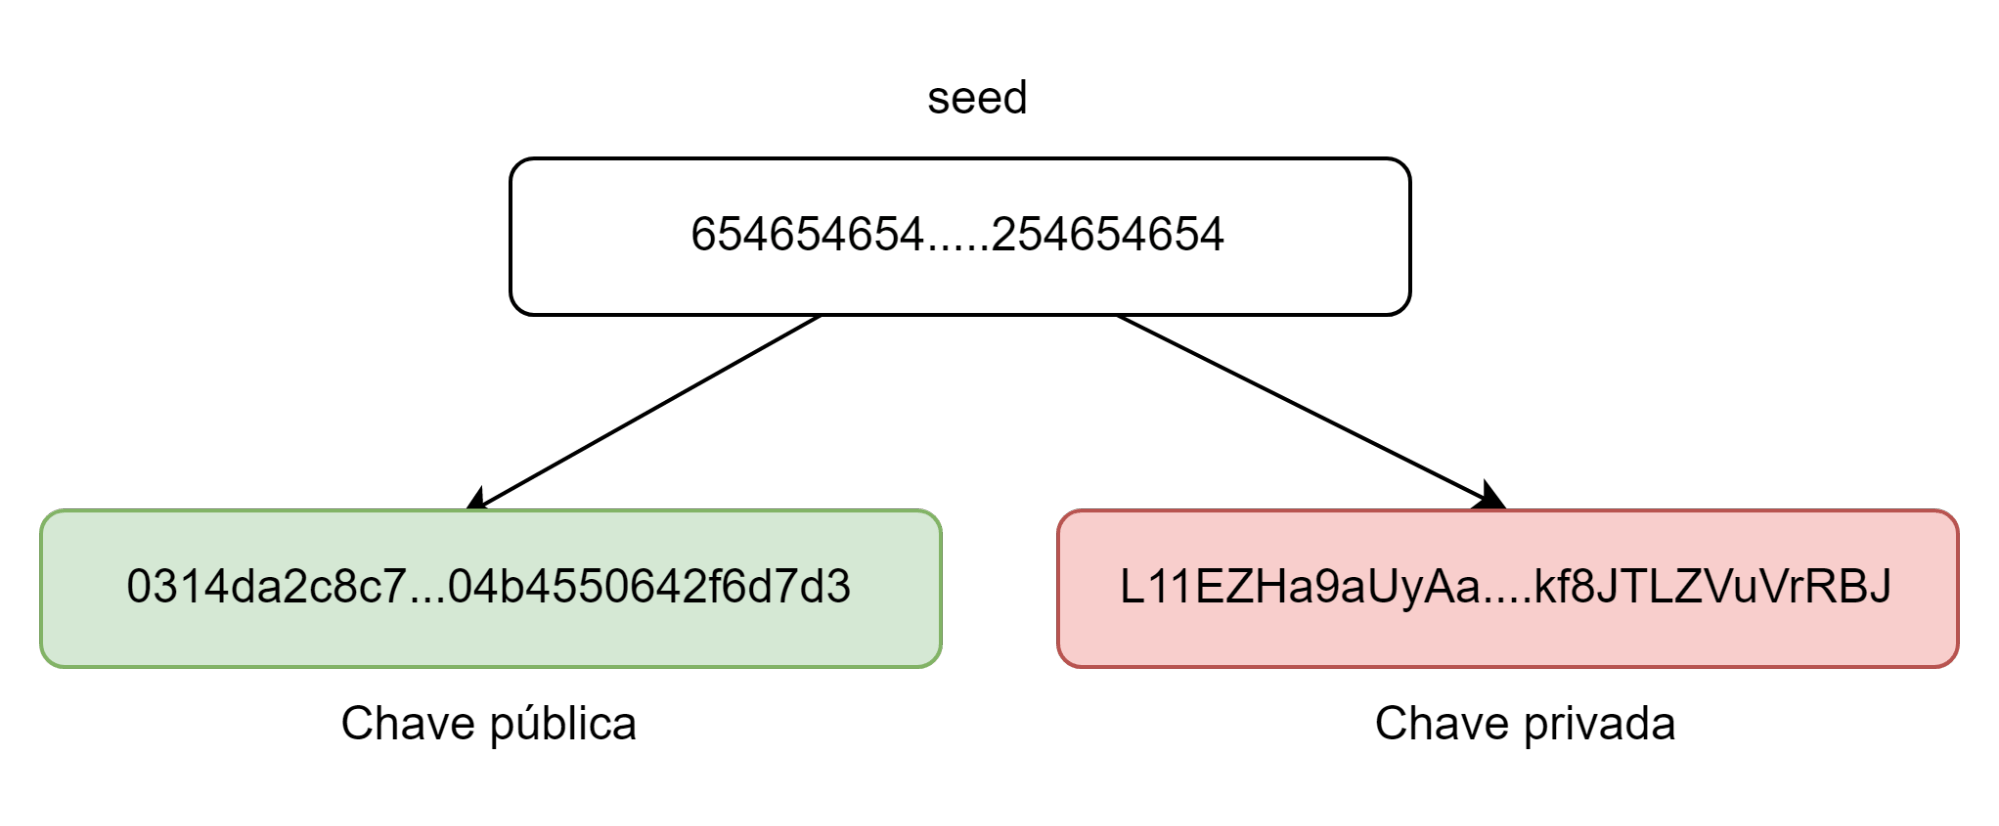 Imagem semelhante a anterior. Neste caso, ela mostra um número muito grande, o seed (654654654…..254654654) gerando outros dois números indicados por setas à direita e à esquerda: “Chave pública” (0314da2c8c7…04b4550642f6d7d3), representado utilizando caracteres alfanuméricos, e outro “Chave privada” (L11EZHa9aUyAa….kf8JTLZVuVrRBJ) representado também por caracteres alfanuméricos.